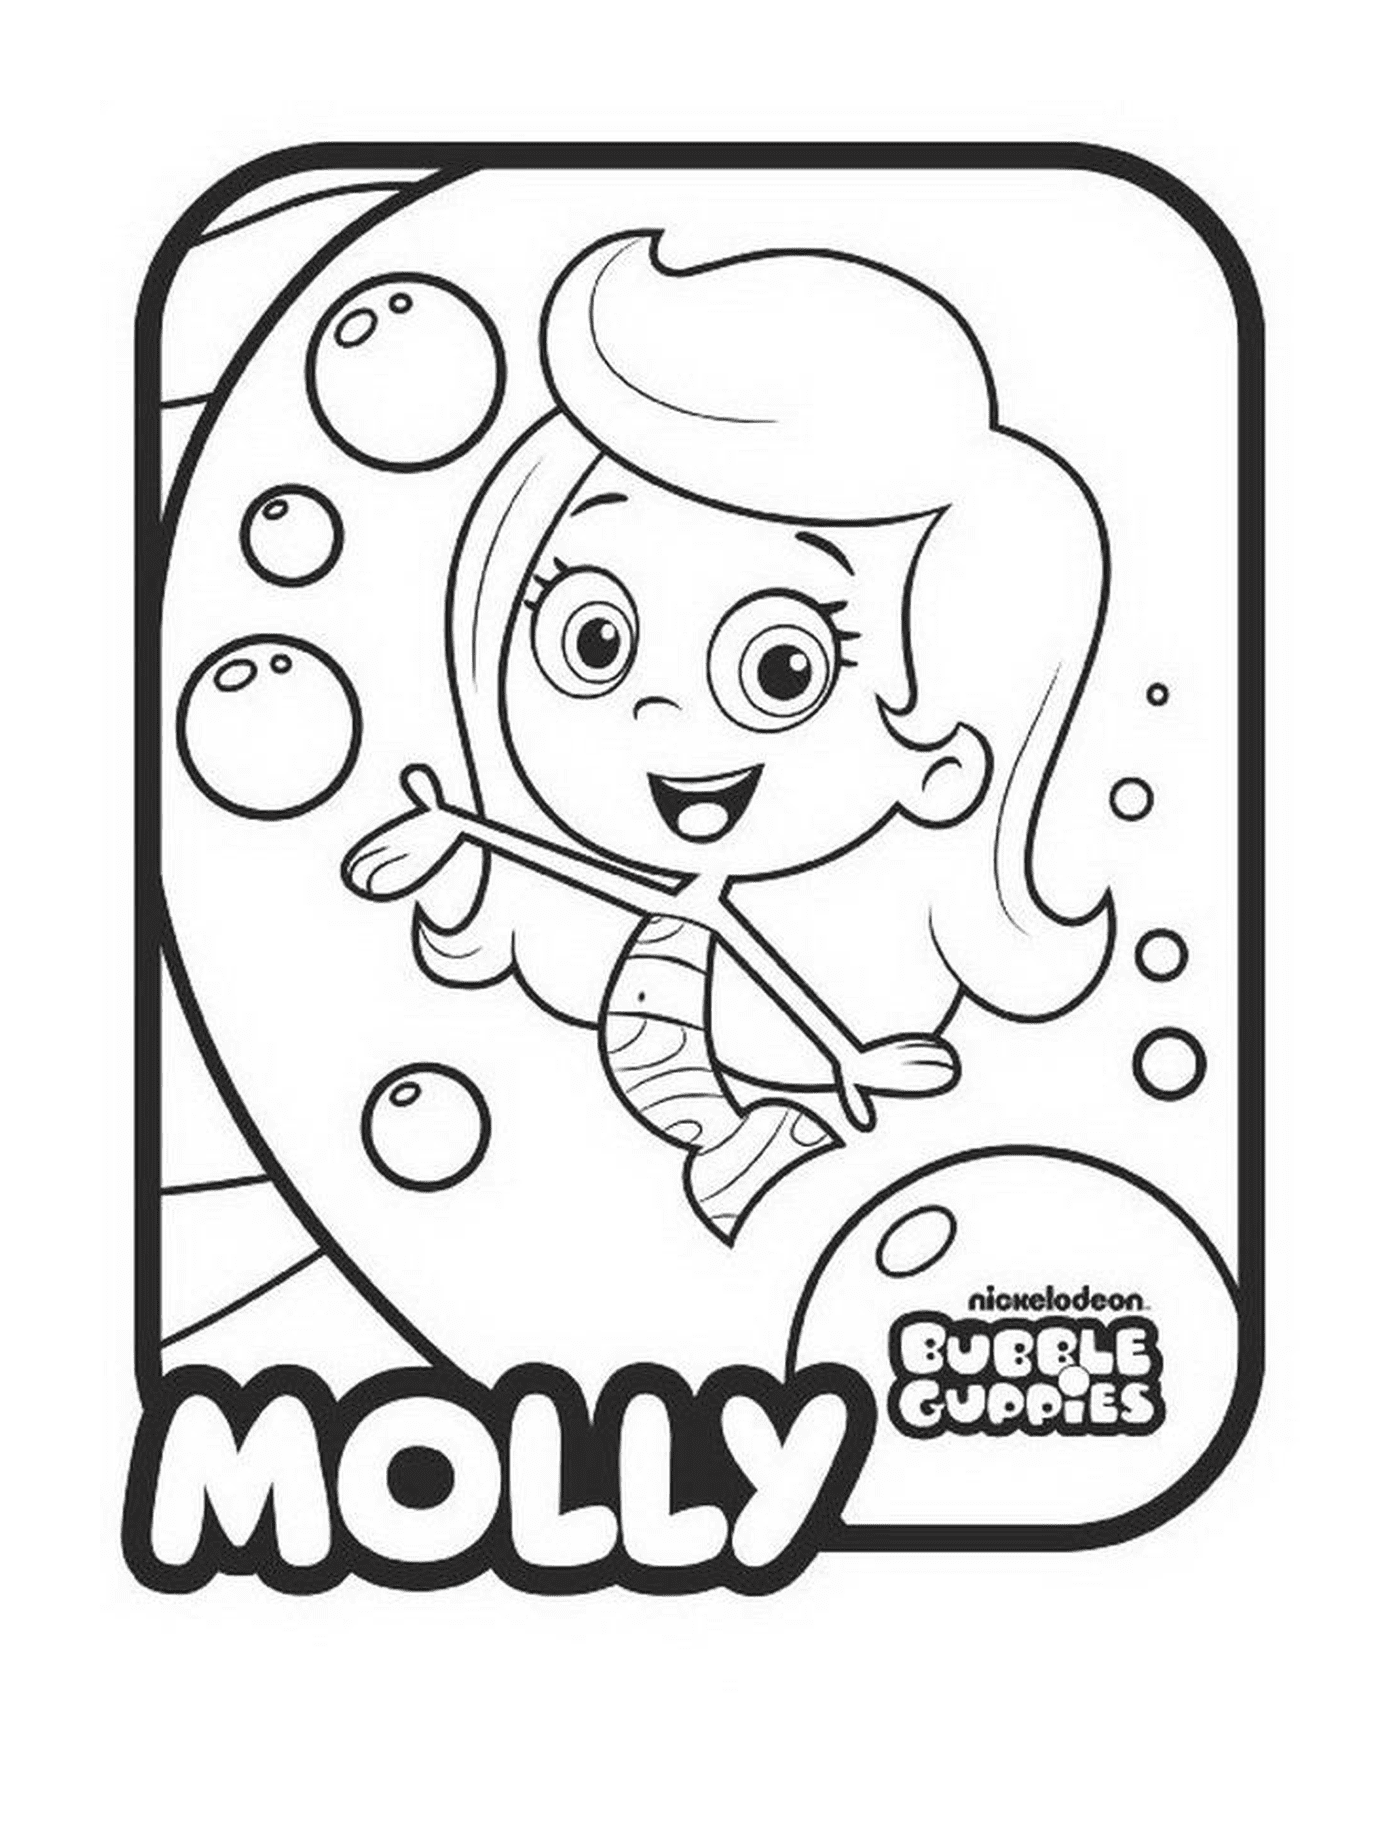  Molly der Bubble Guppies 